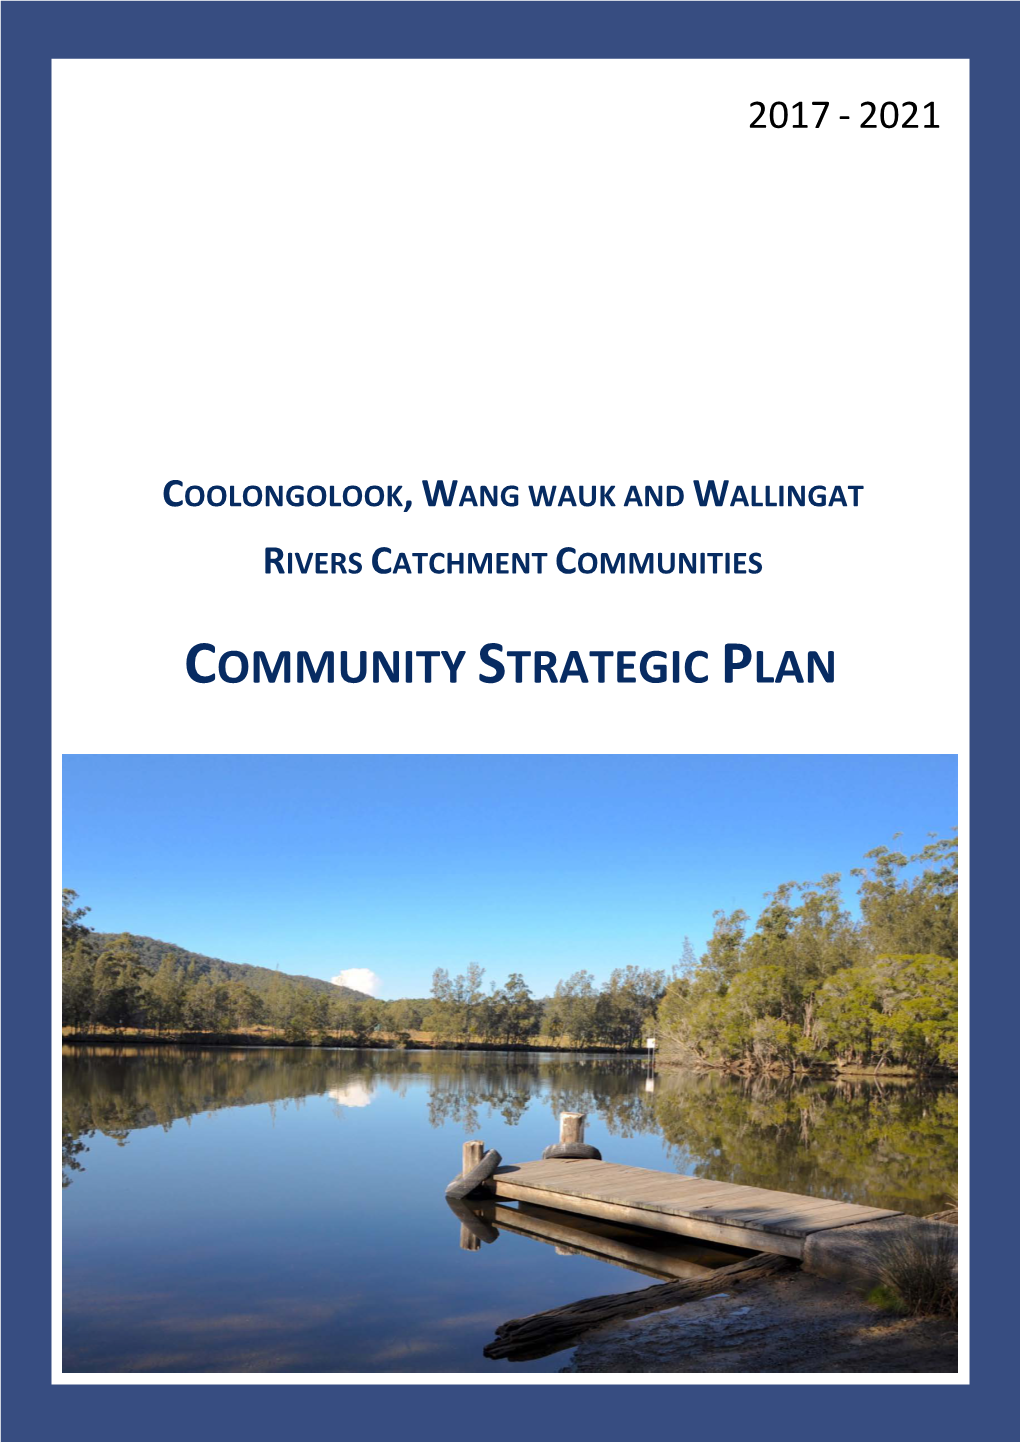 Community Strategic Plan